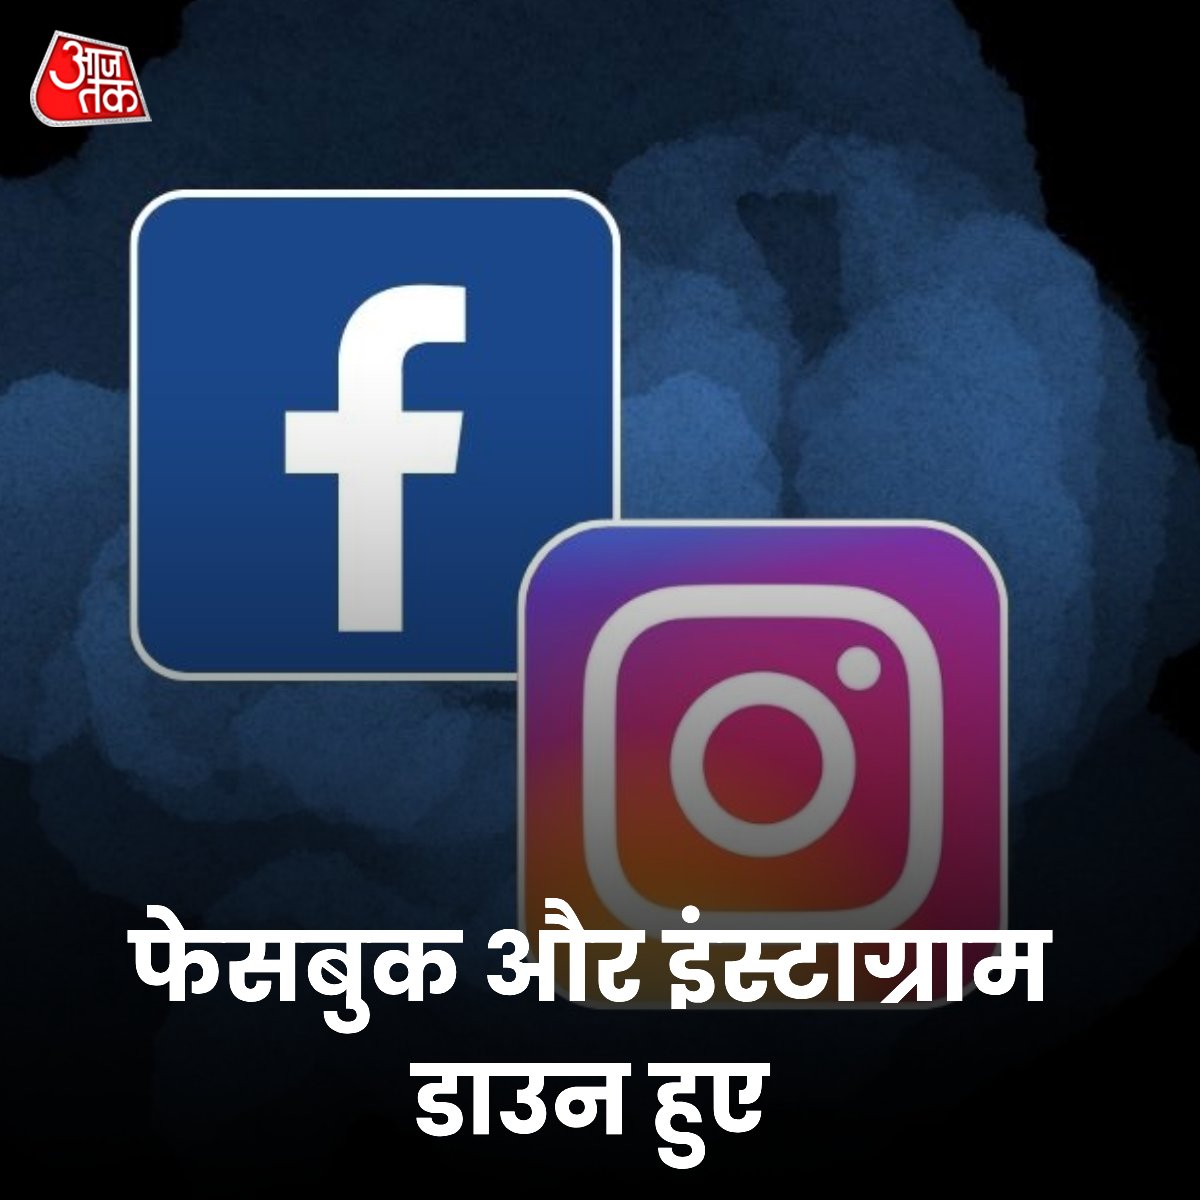 सोशल मीडिया प्लेटफॉर्म फेसबुक और इंस्टाग्राम मंगलवार रात 5 मार्च 2024 को अचानक डाउन हो गए है. यूजर्स के सोशल मीडिया अकाउंट्स अचानक ही लॉगआउट हो रहे हैं. #Instagram #Facebook #SocialMedia #News